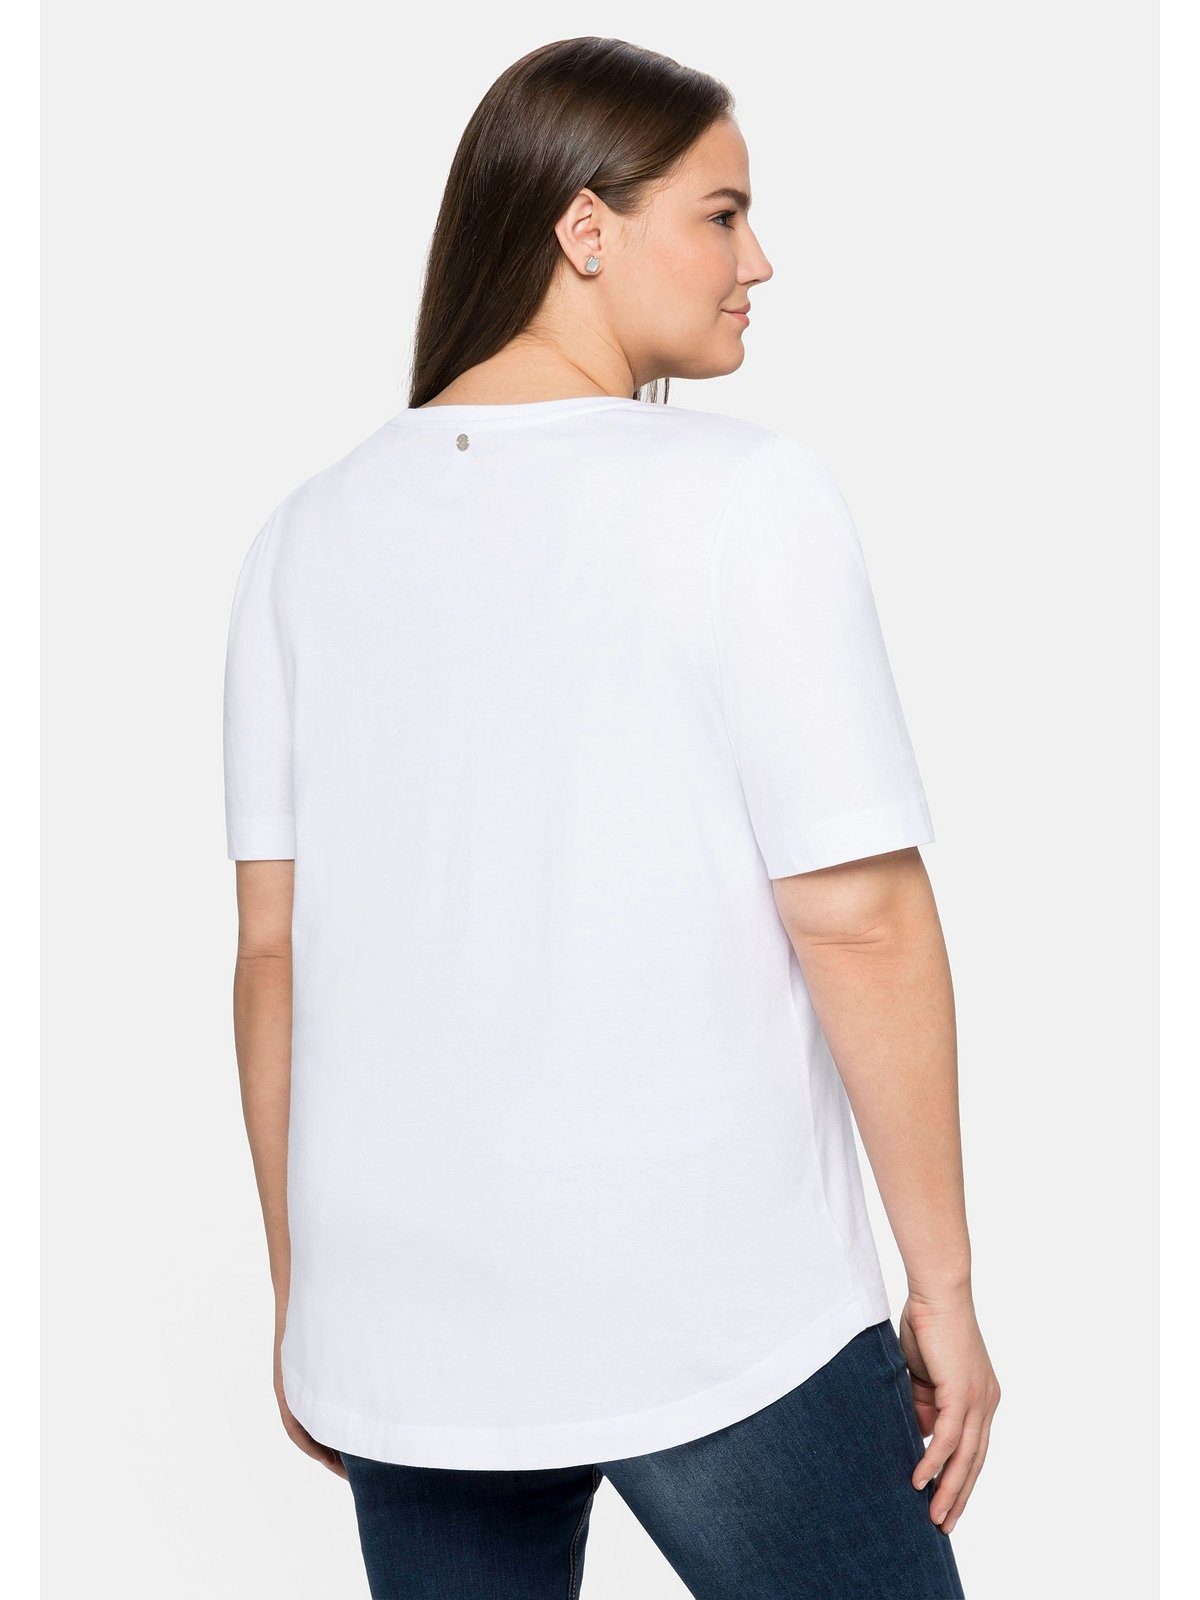 Sheego T-Shirt Große mit Baumwolle weiß Größen Frontdruck aus